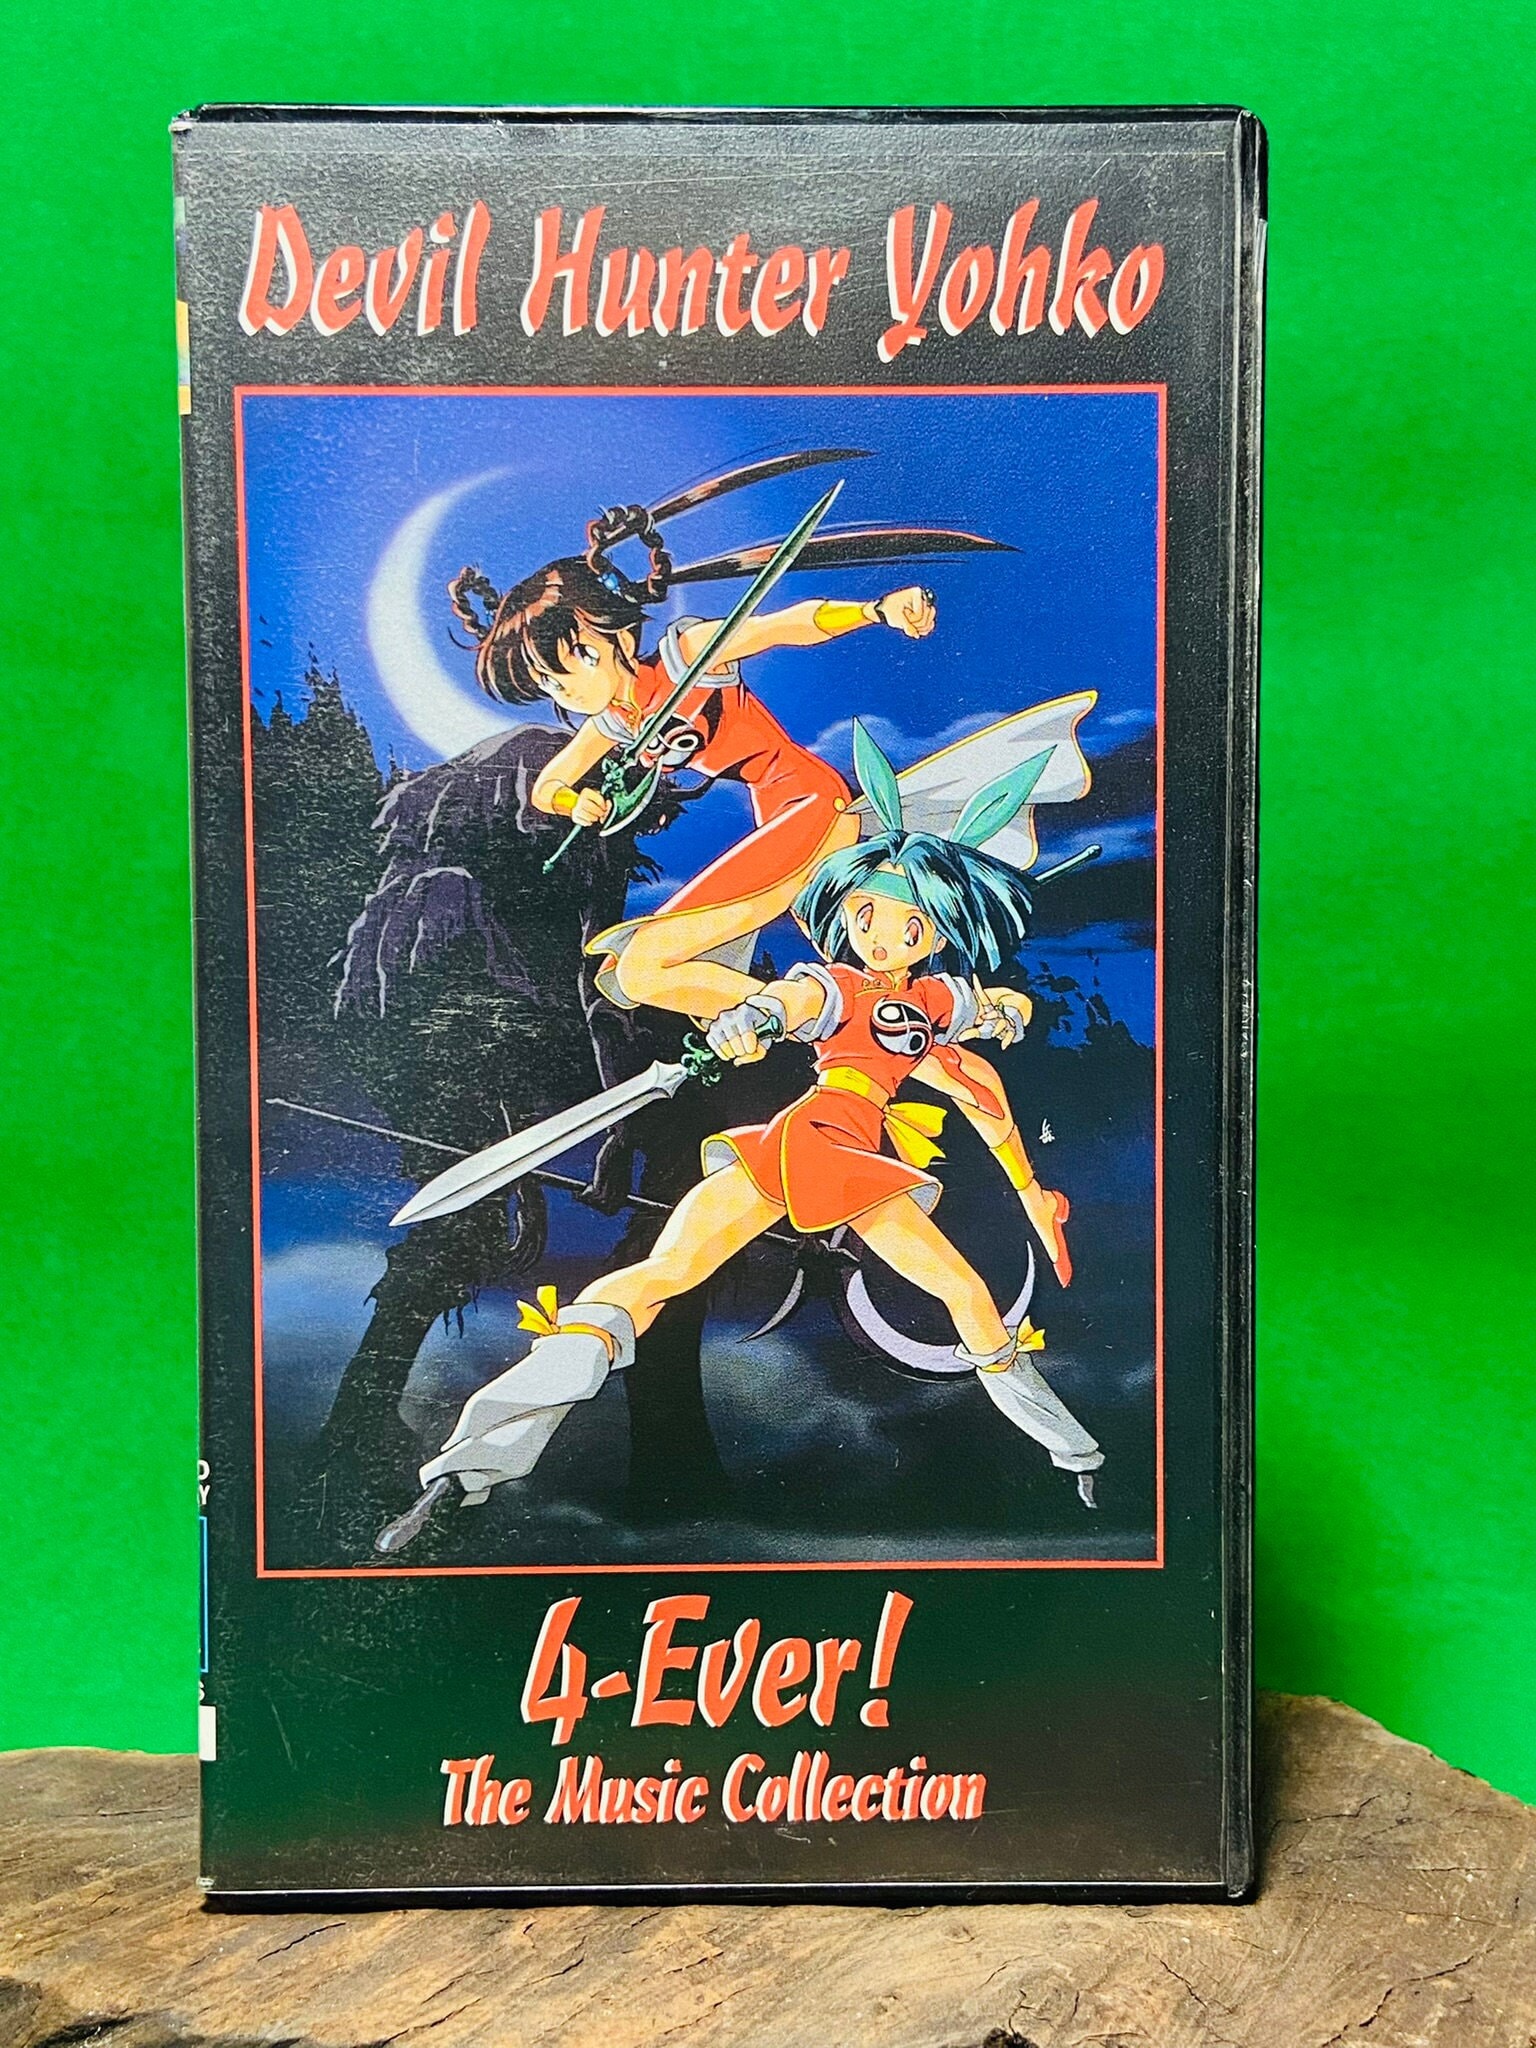 Devil Hunter Yohko anime cels